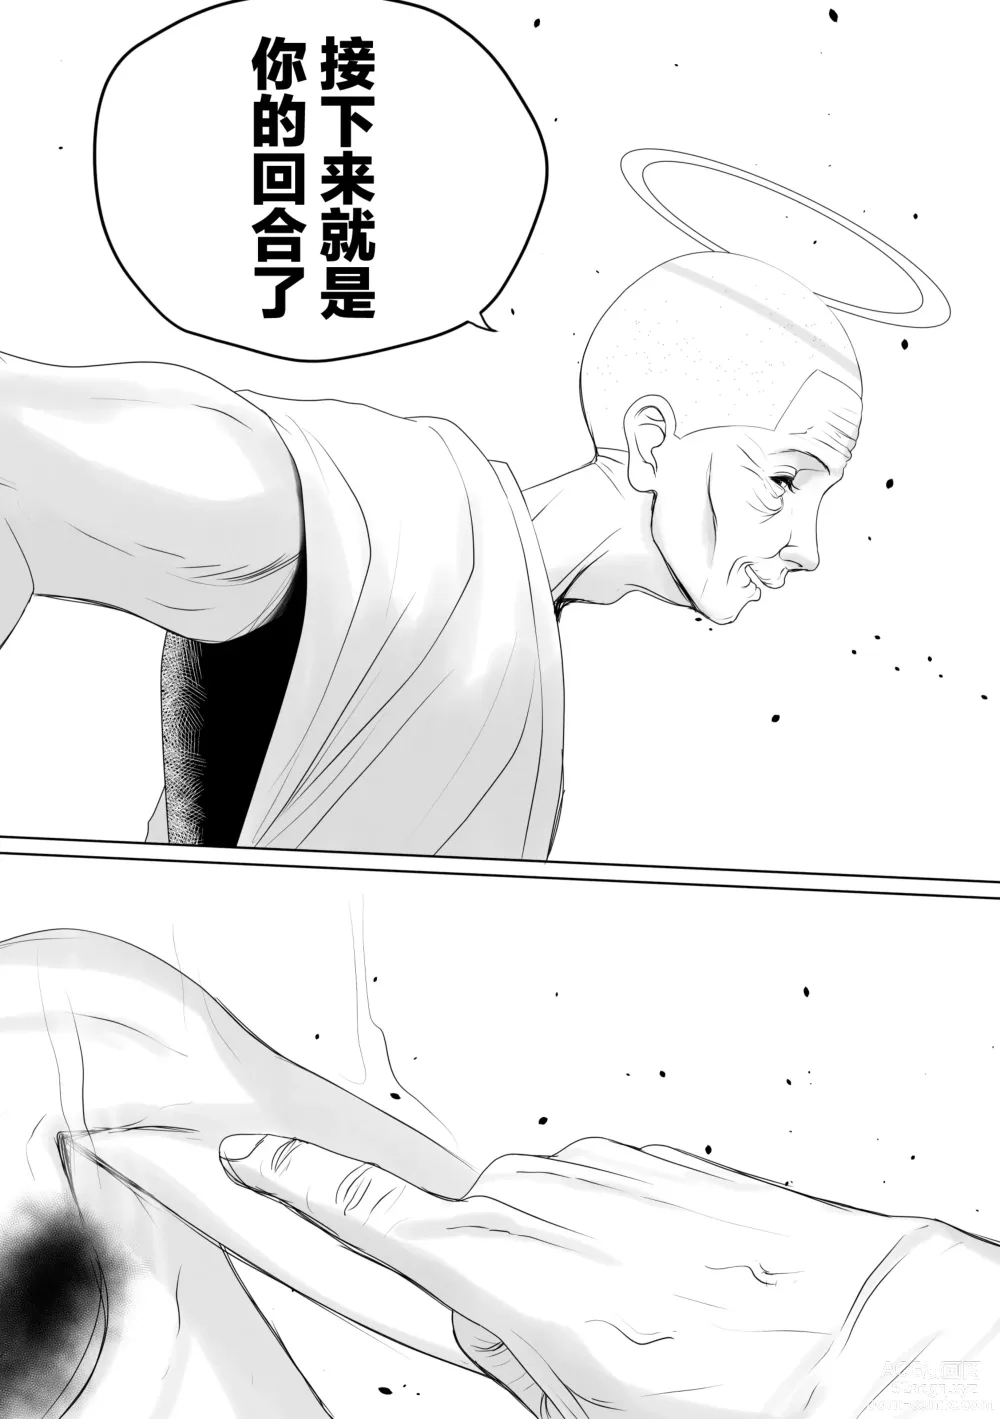 Page 46 of doujinshi OYAOYAKODON